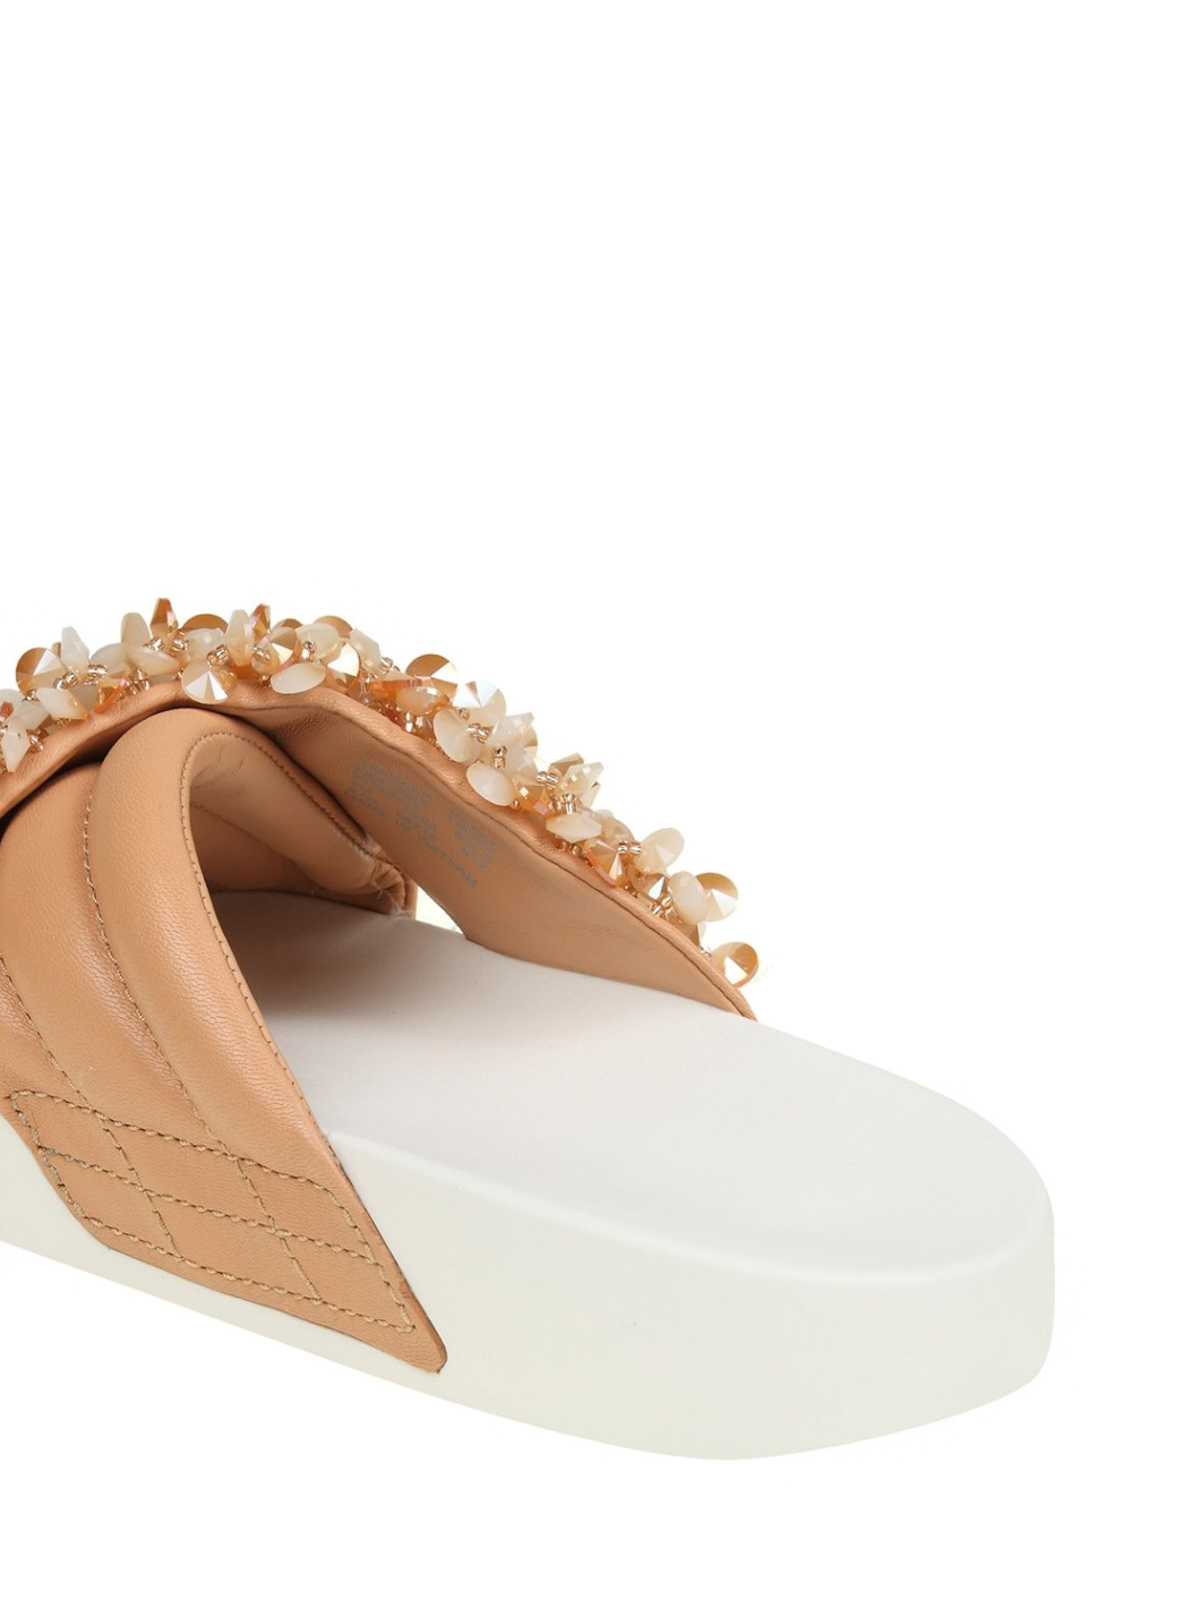 Sandals Tory Burch - Logan embellished nude slides - 46713217 